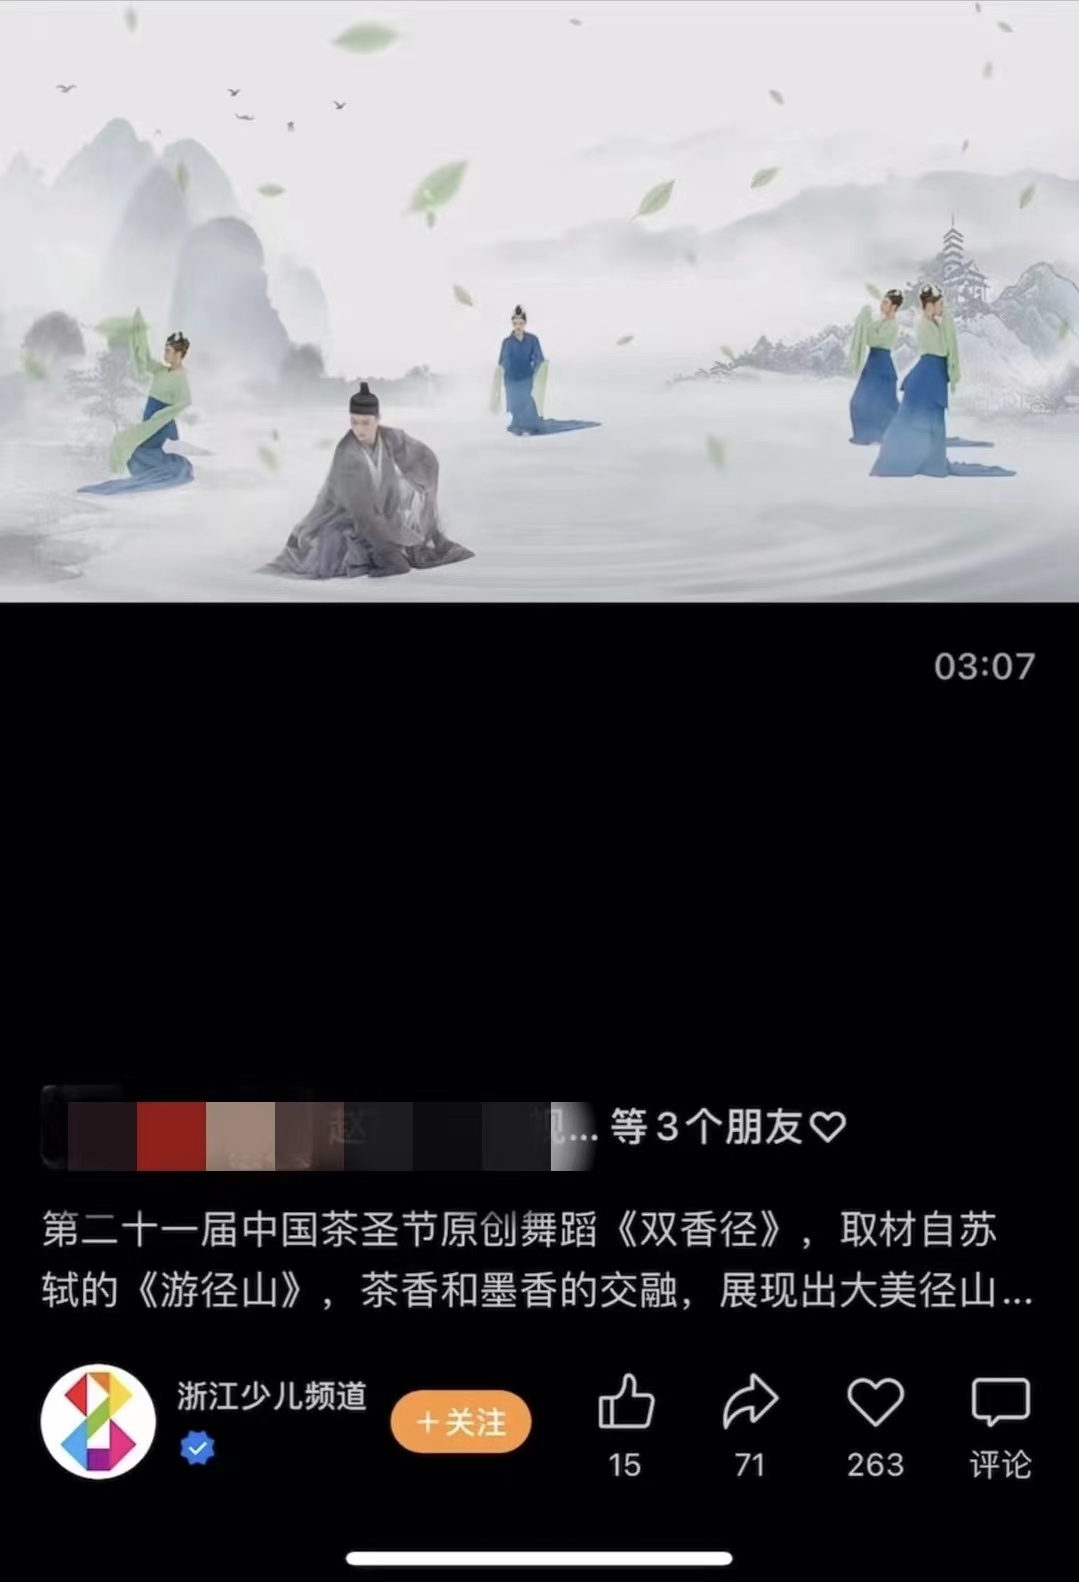 浙江少儿频道视频号贴了《双香径》视频